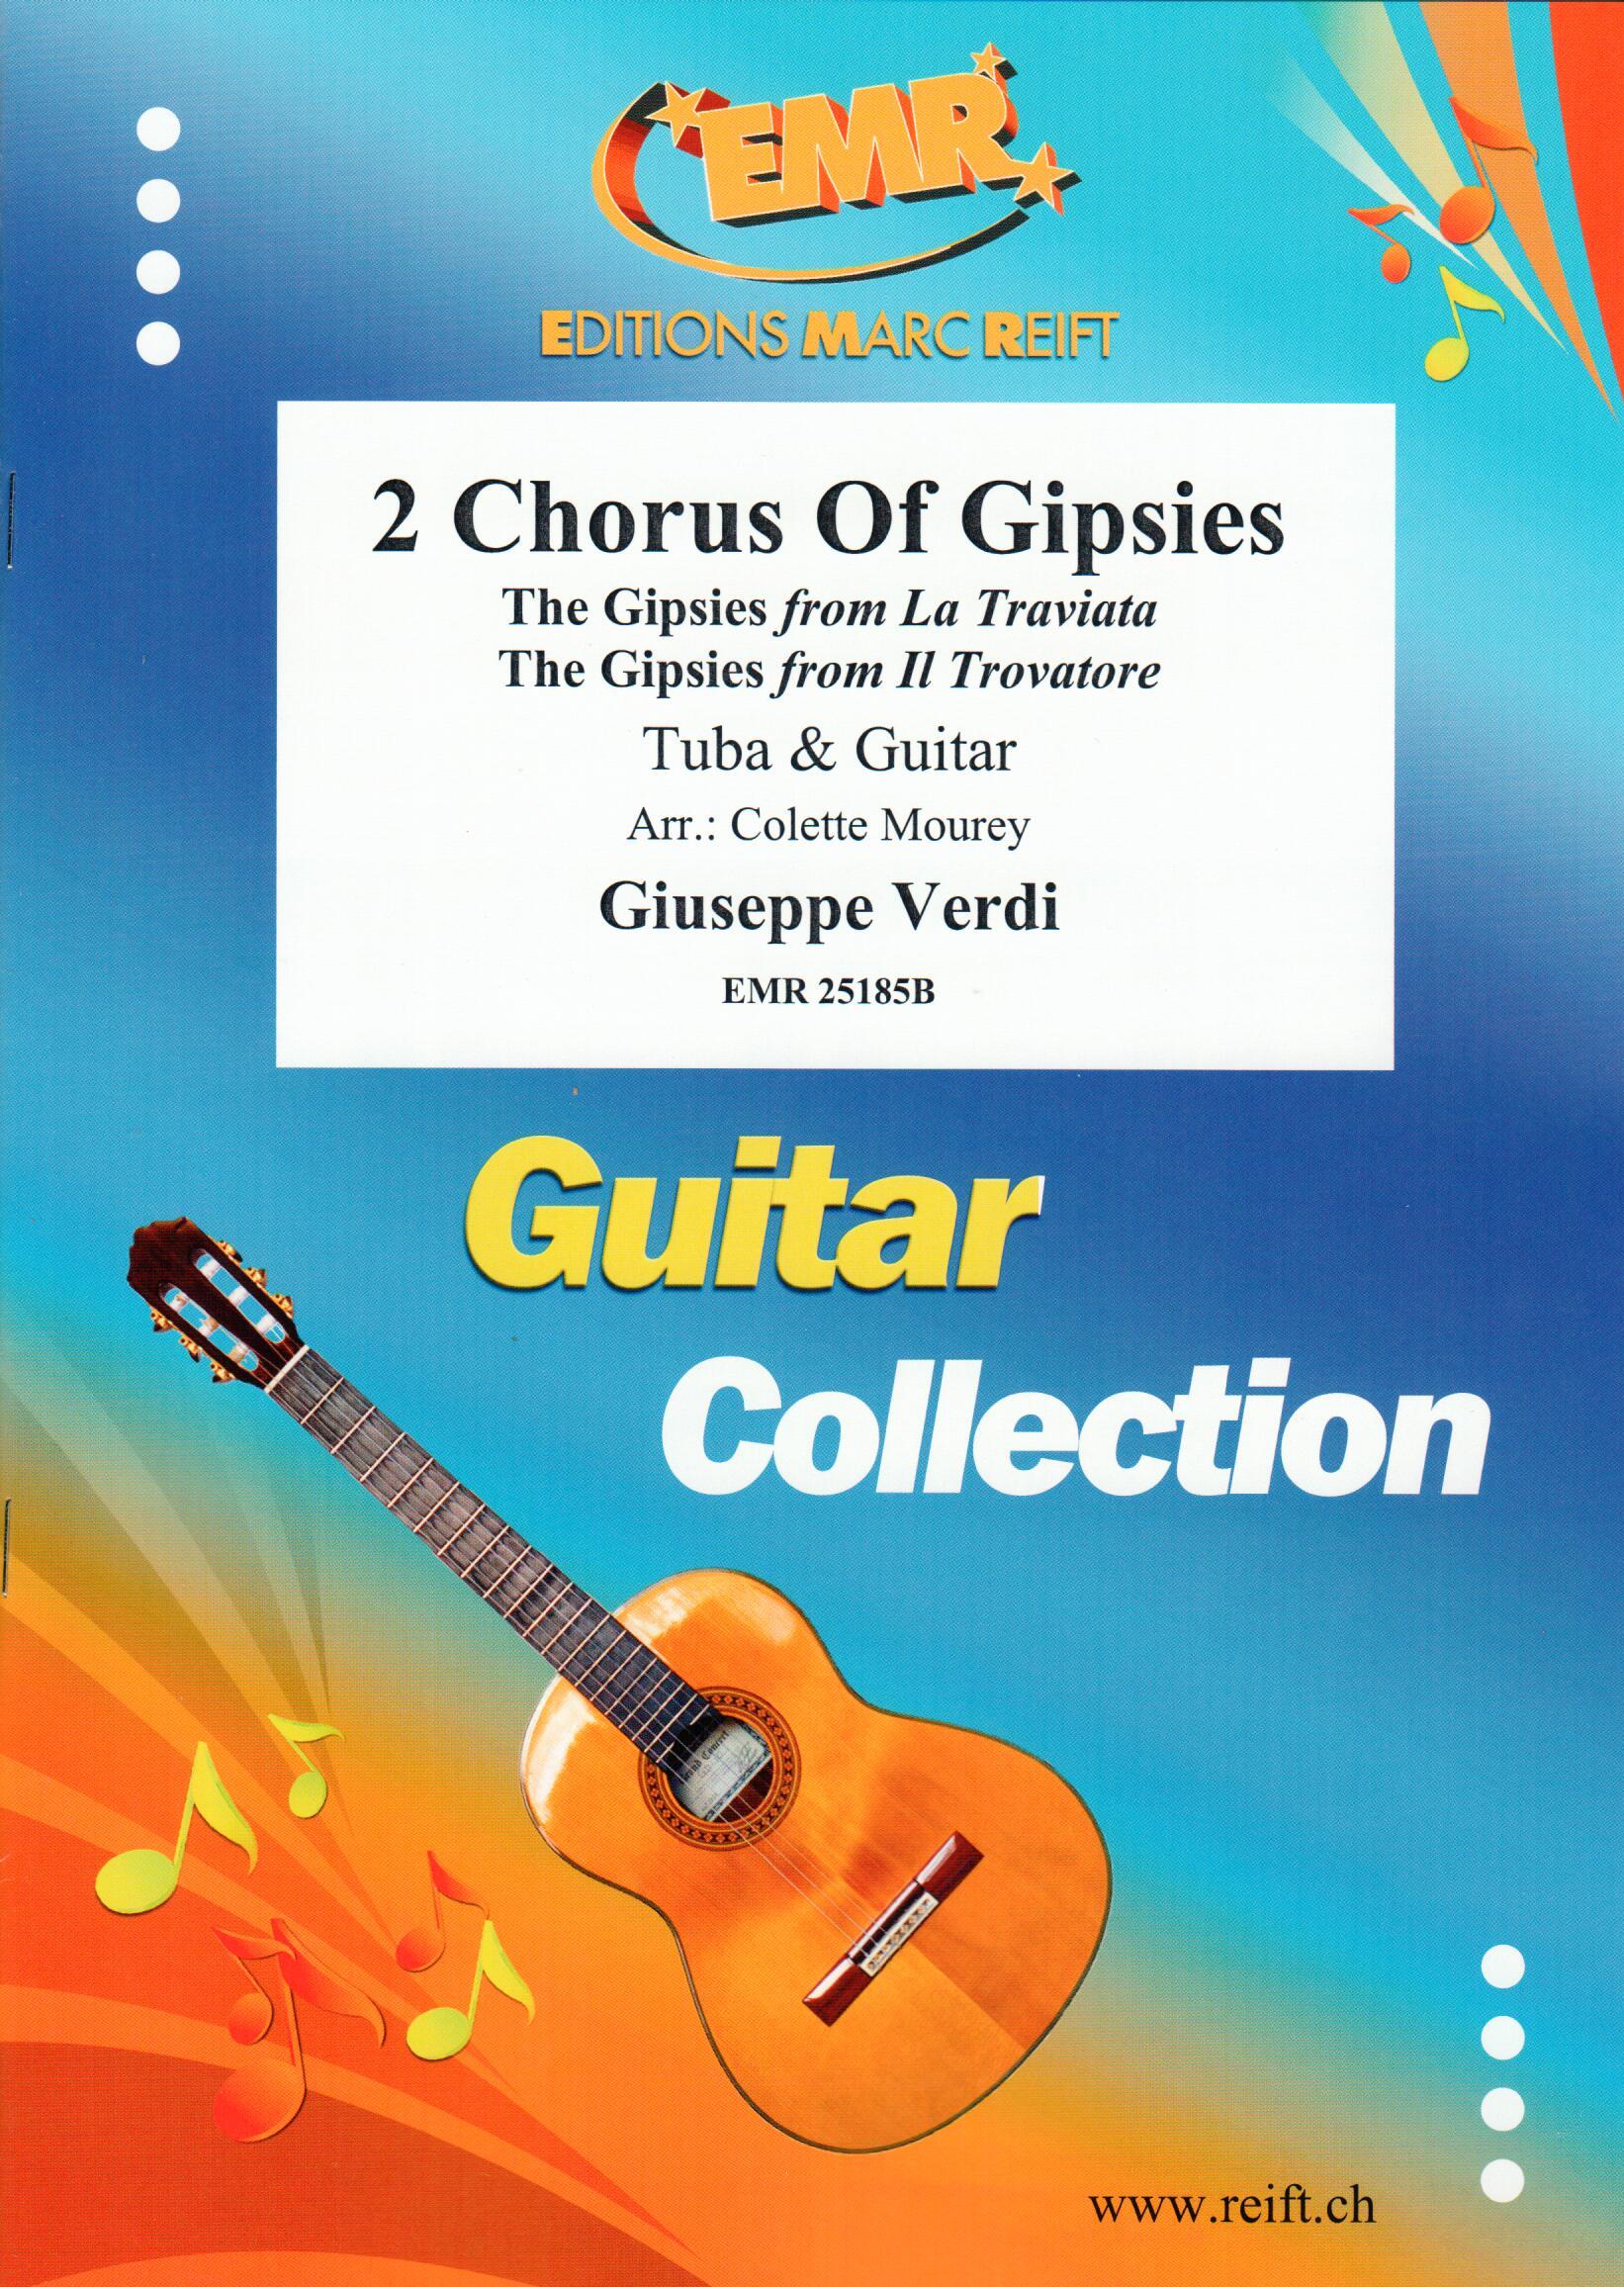 2 CHORUS OF GIPSIES, SOLOS - E♭. Bass